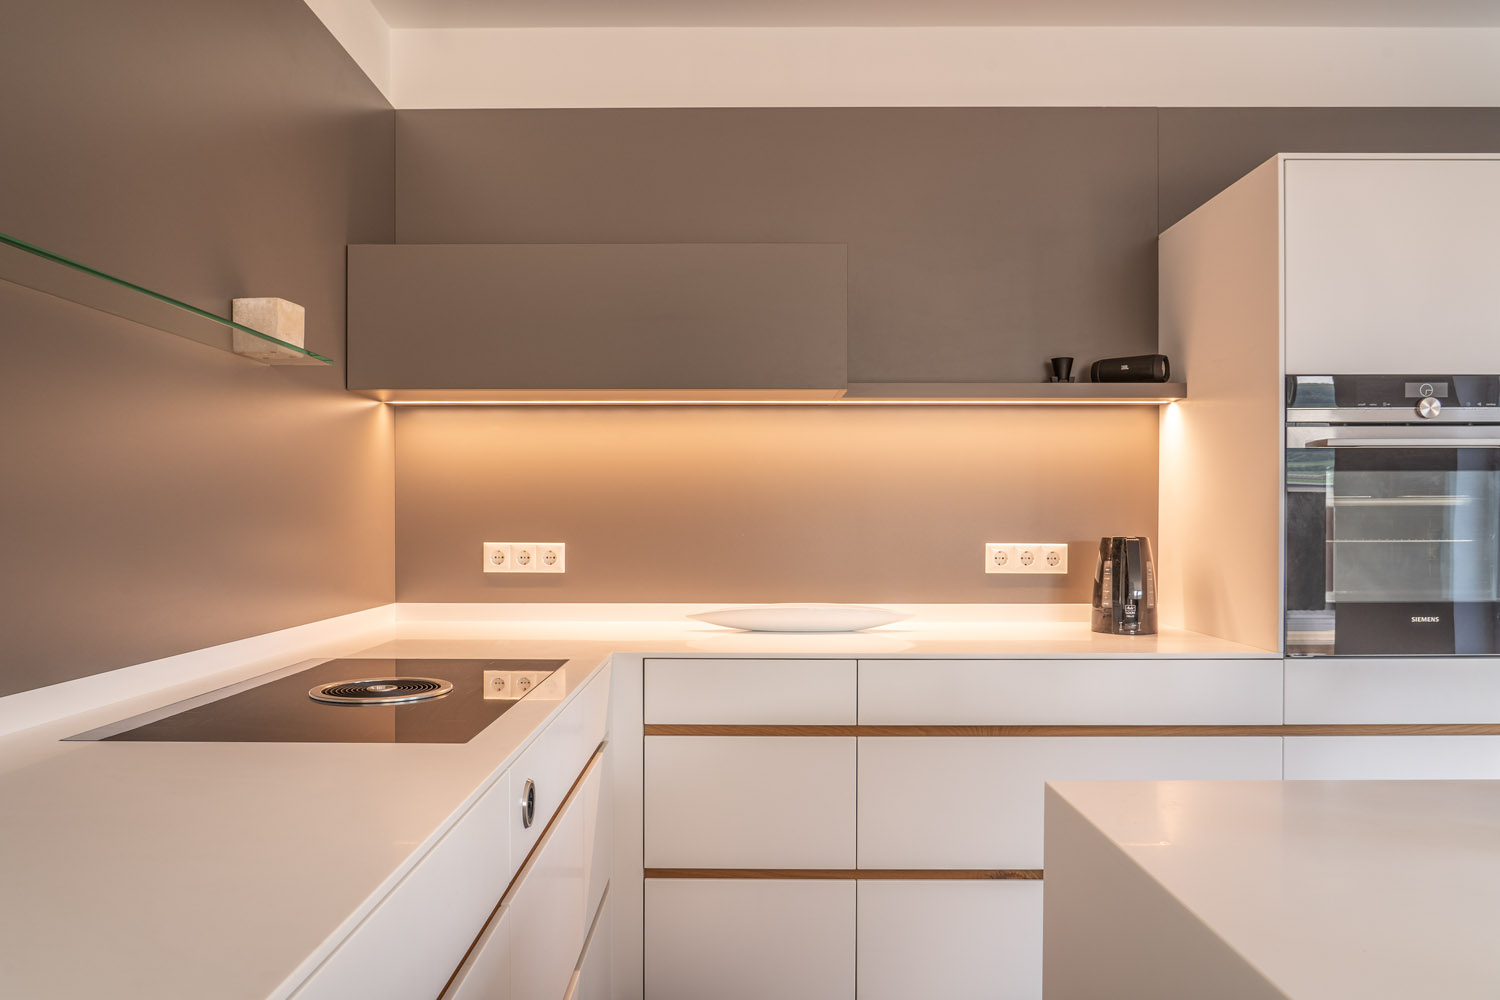 plan 3 kitchens / Architektova kuchyně Dipl. Norbert Krähling / Kompaktní kuchyně s ostrůvkem